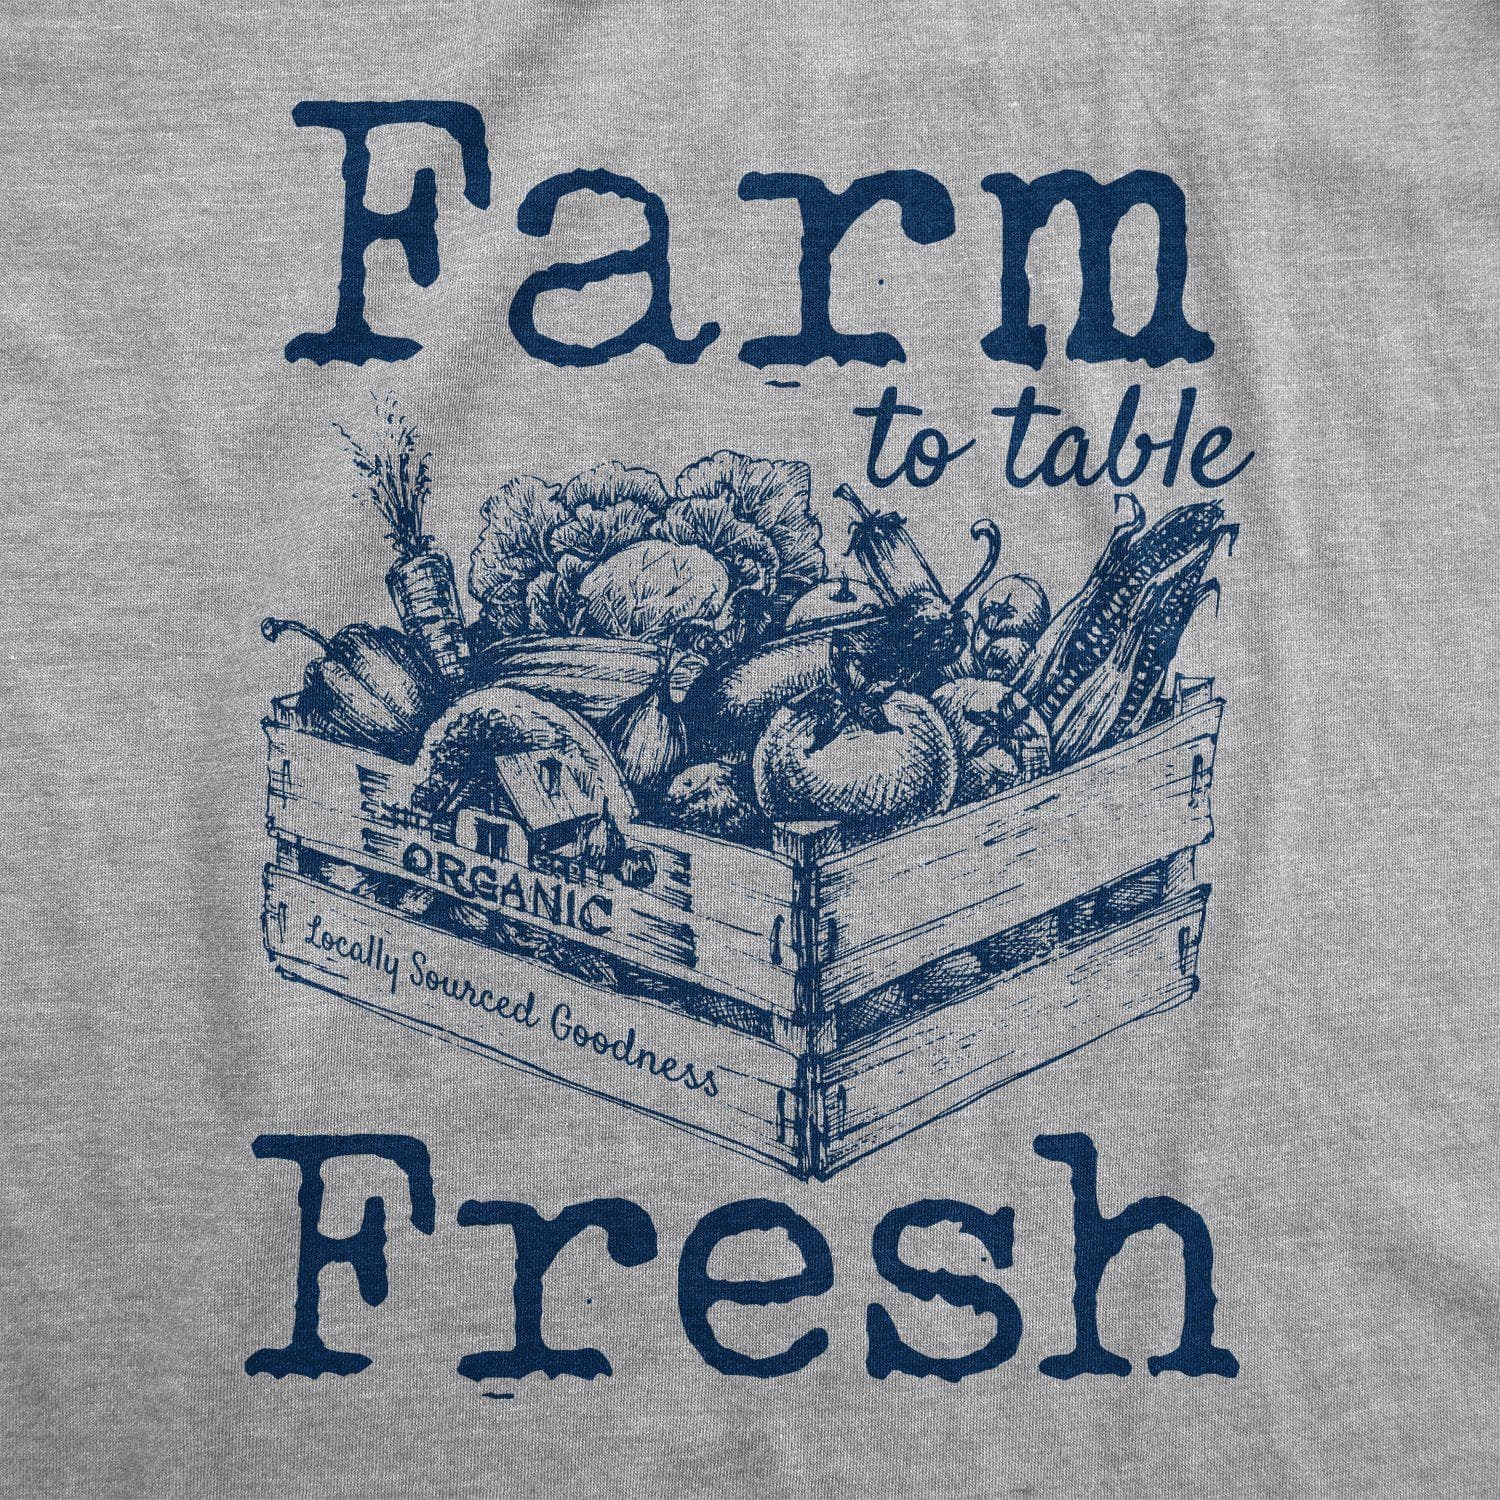 Farm To Table Fresh Women's Tshirt  -  Crazy Dog T-Shirts